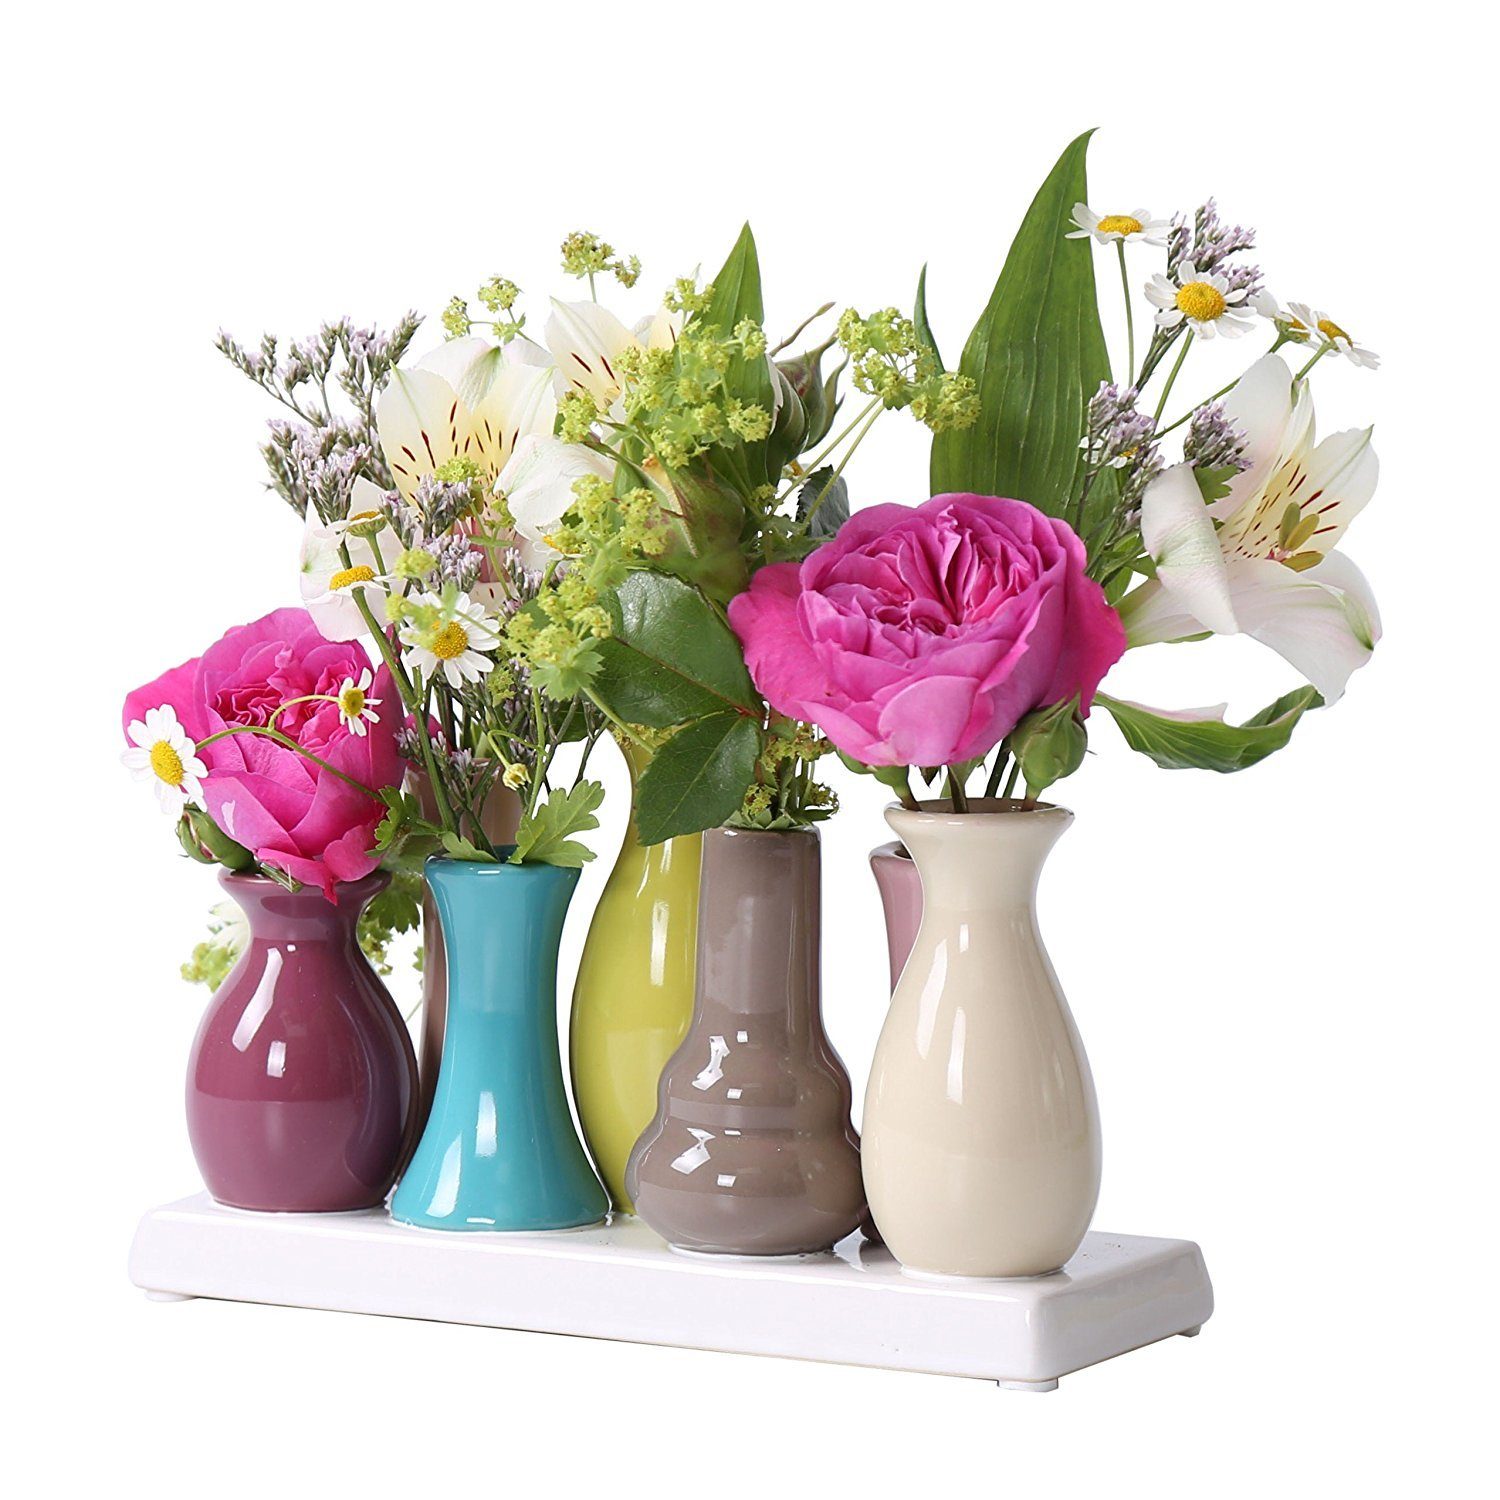 Jinfa Dekovase Handgefertigte kleine Keramik Deko Blumenvasen (7 Vasen Set Bunt), verbunden auf auf einem Tablett